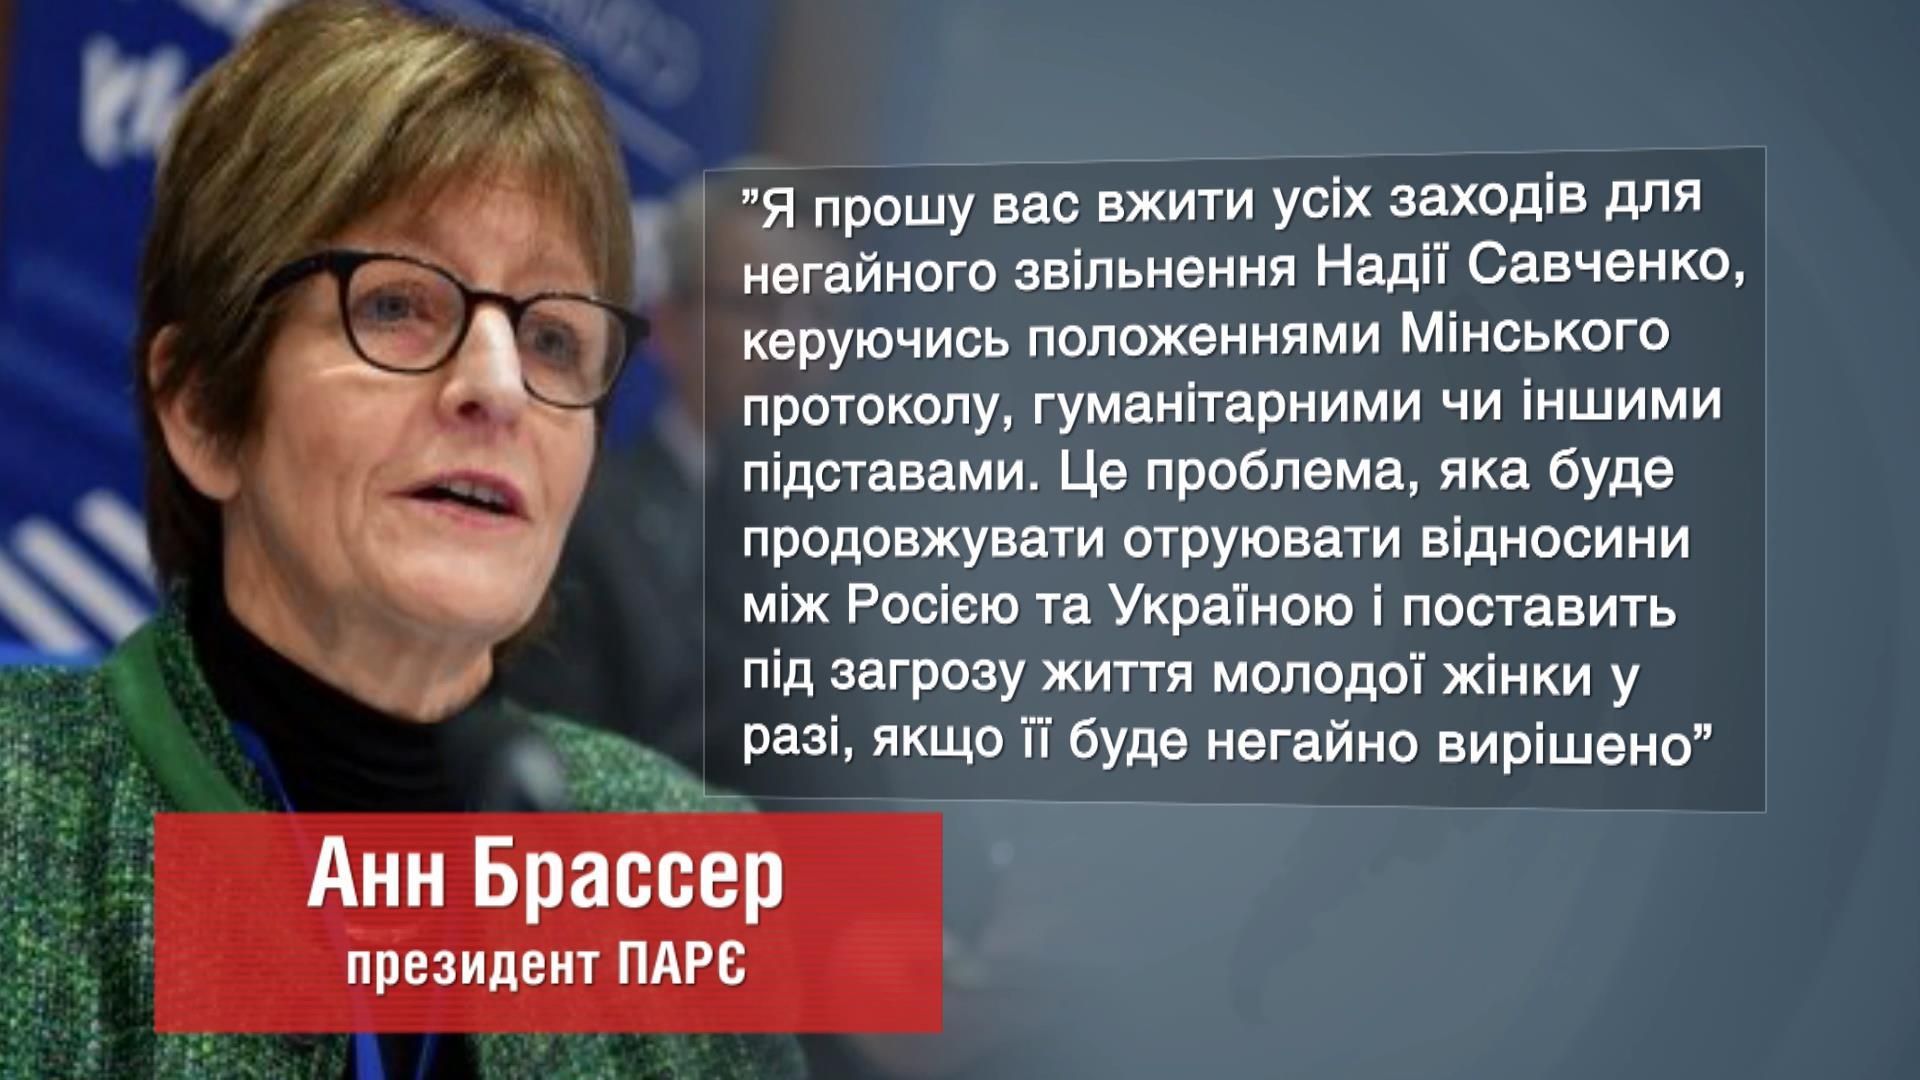 Президент ПАСЕ призвала спикера Госдумы отпустить украинскую летчицу